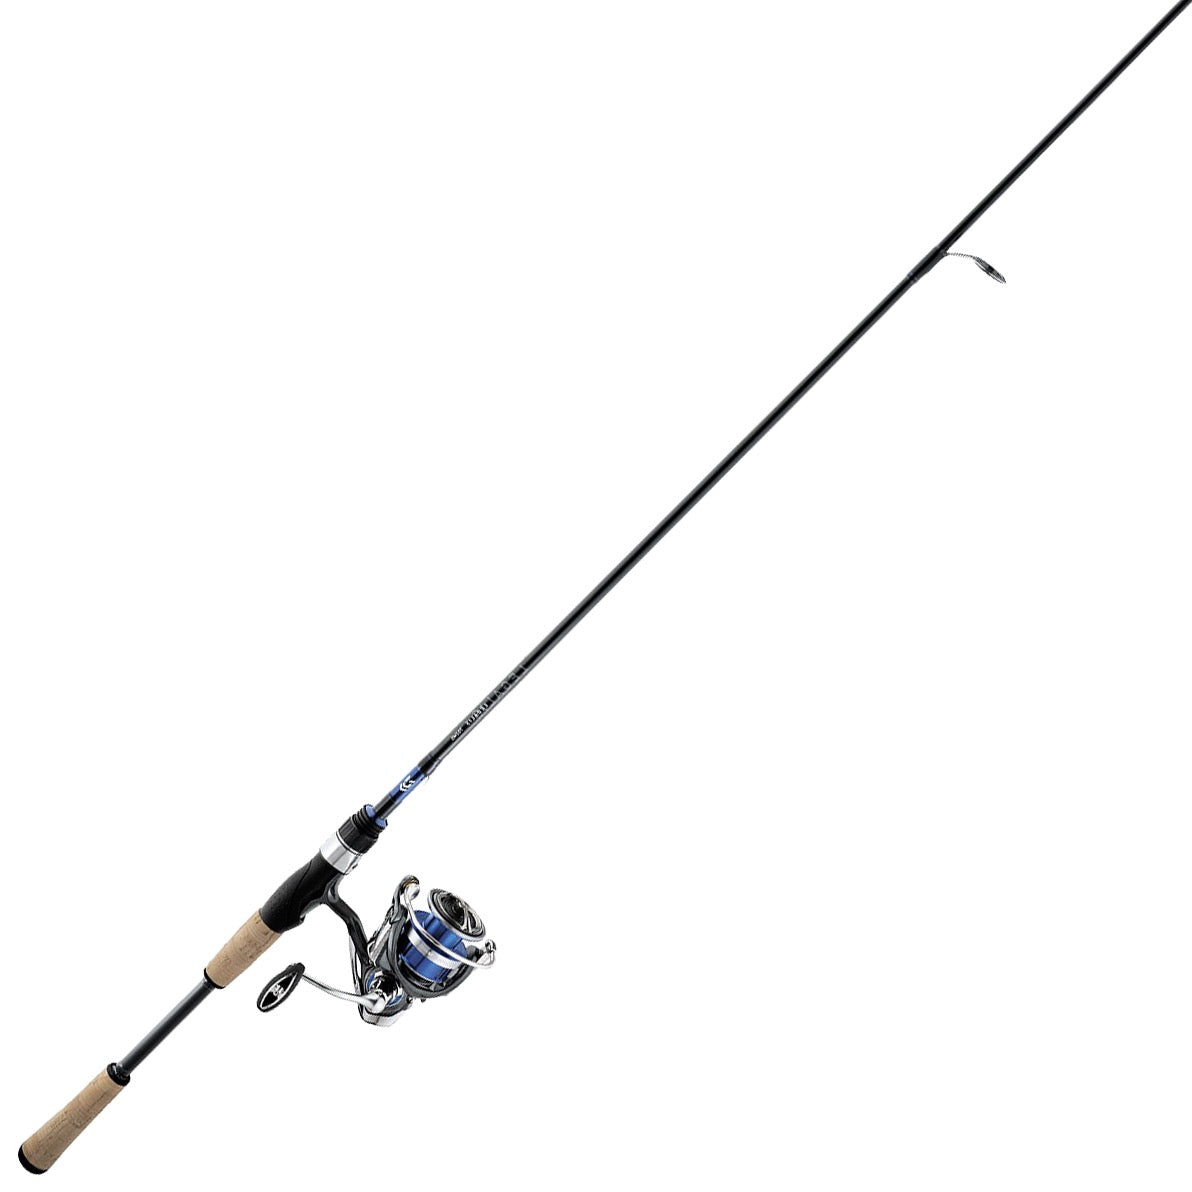 zszDSy-sz Fishing Spinning Reel 1500-3500 Shllow Spool Ratio:6.2